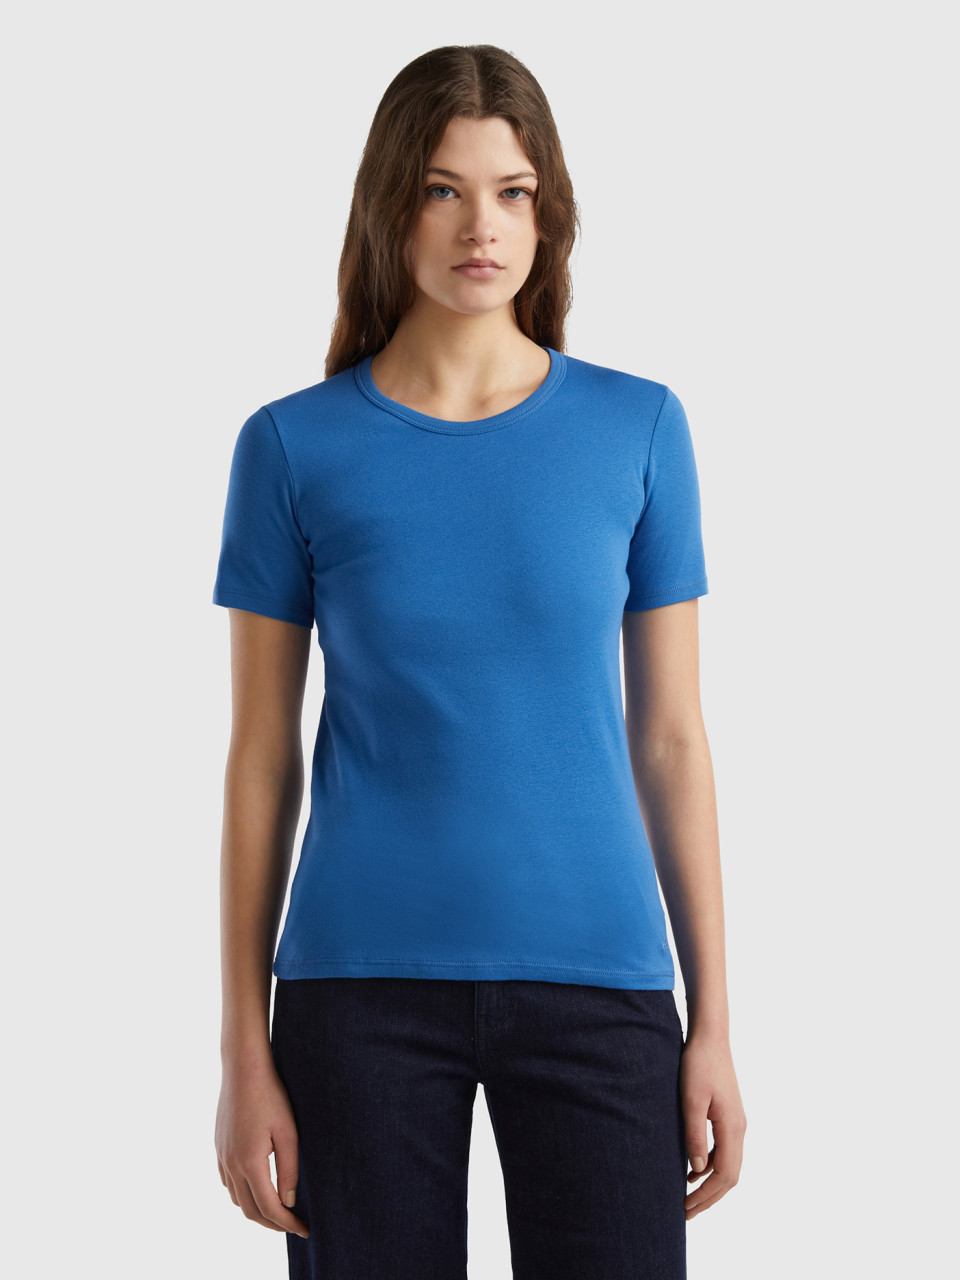 Benetton, Long Fiber Cotton T-shirt, Blue, Women